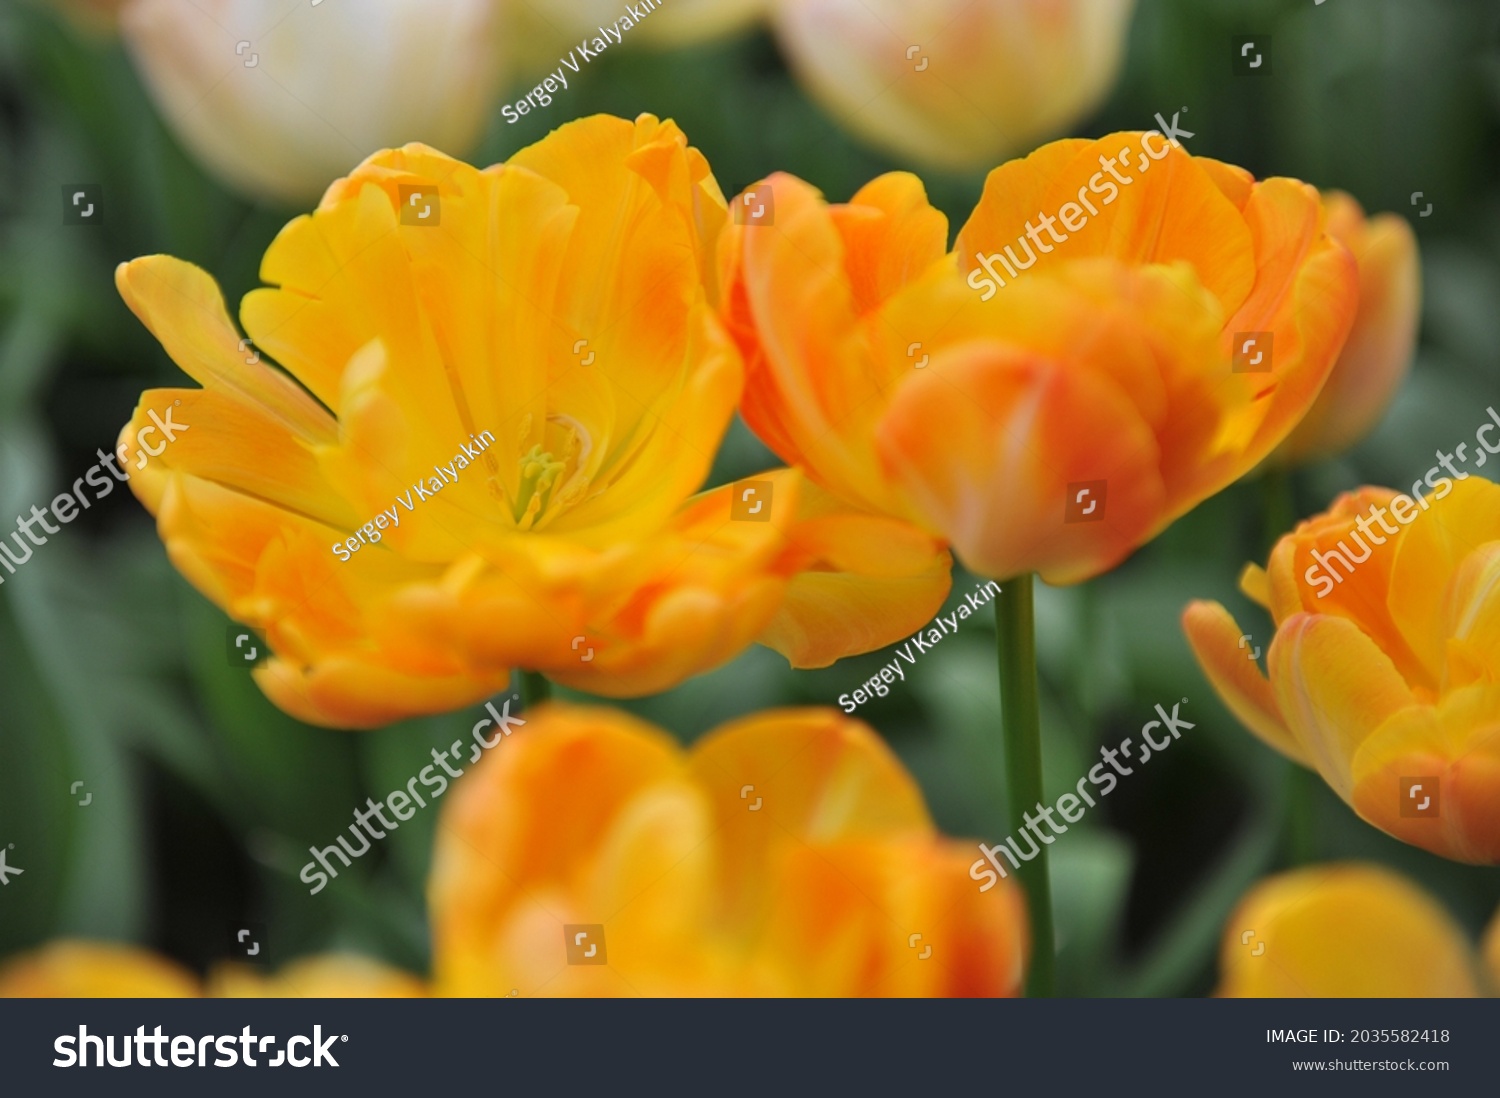 Yellow orange tulip Images, Stock Photos & Vectors | Shutterstock